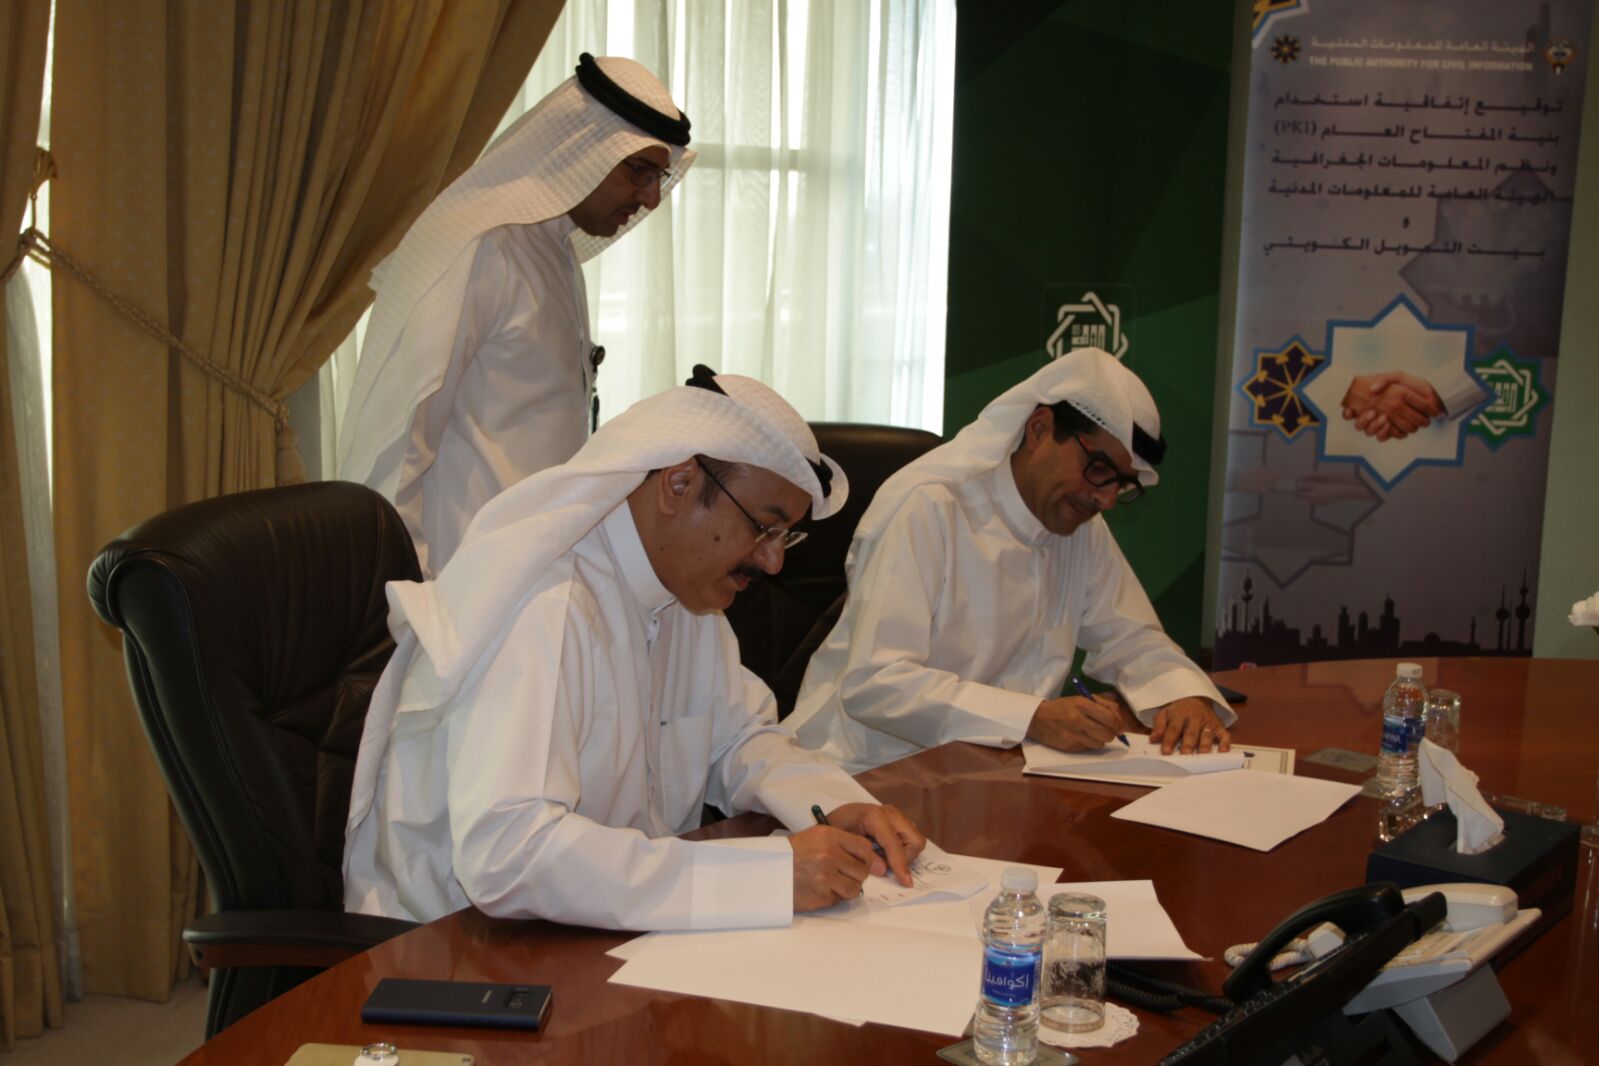 (المعلومات المدنية) و(بيتك) الكويتيان أثناء توقيع مذكرة لتفعيل الخدمات الإلكترونية